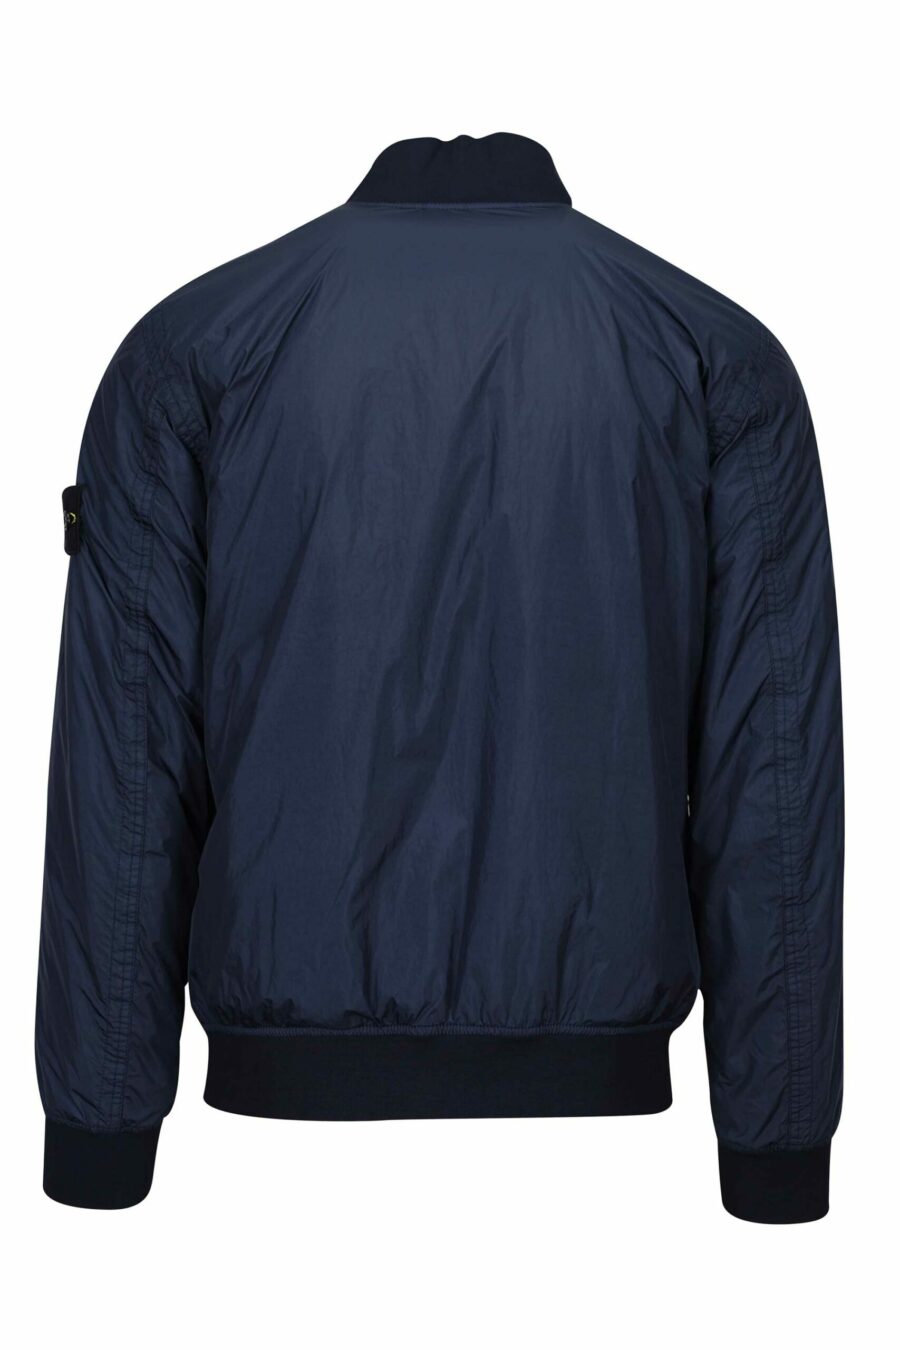 Blaue Jacke mit Logo-Seitenaufnäher - 8052572762185 2 skaliert